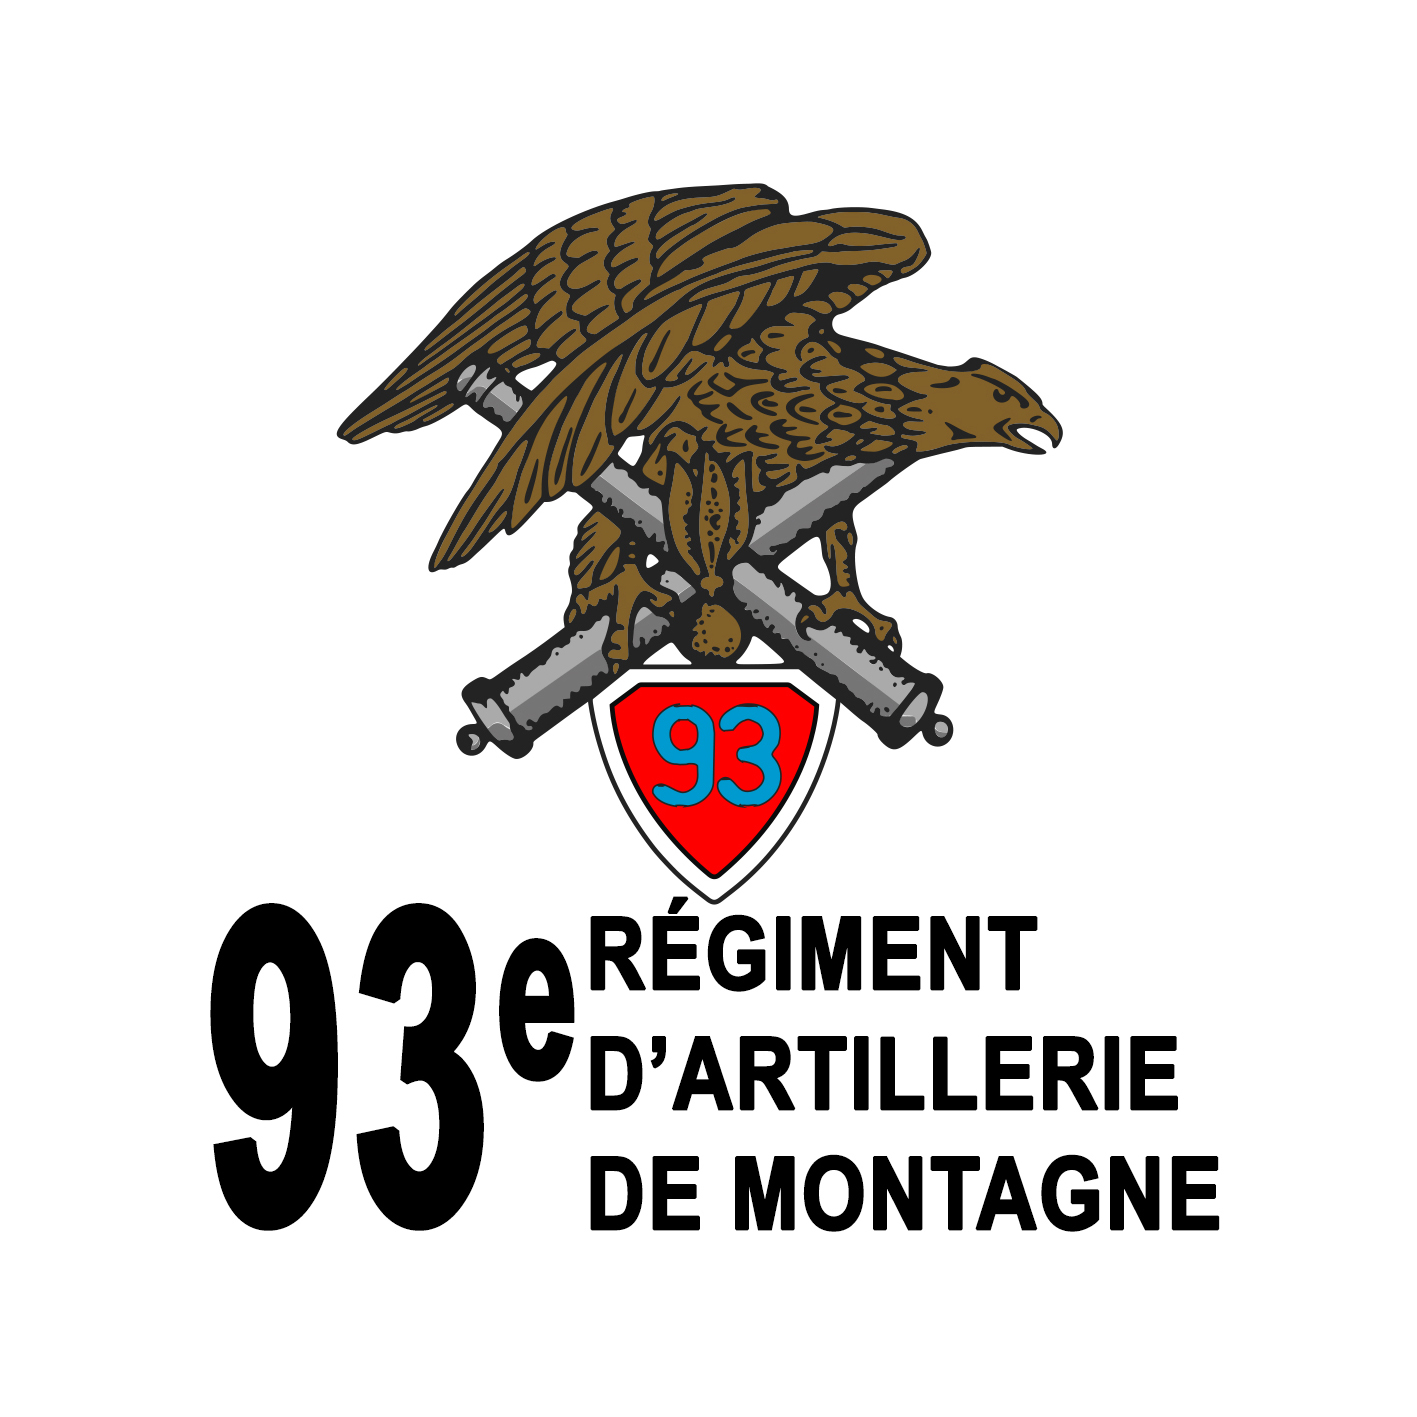 93E REGIMENT D'ARTILLERIE DE MONTAGNE